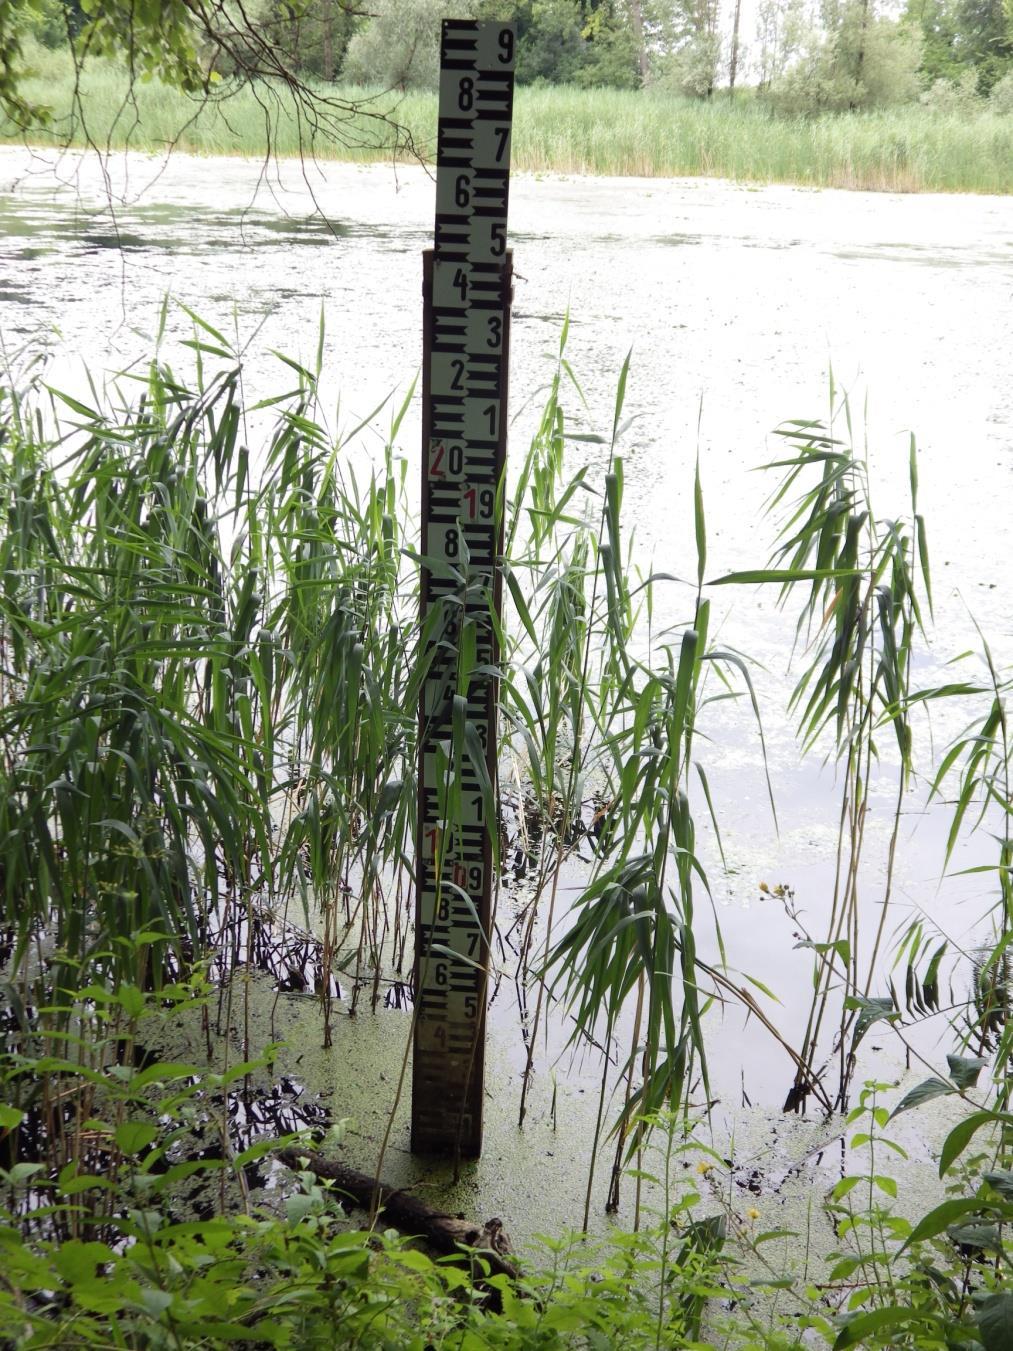 3. ábra. Vízszint mérő oszlop az Ó-Dráva alsó szakaszán 2016. július 15.-én. (Fotó: Purger D.) A holtág mentén a természetes növénytakaró kialakulását alapvetően a vízfolyás közelsége határozza meg.